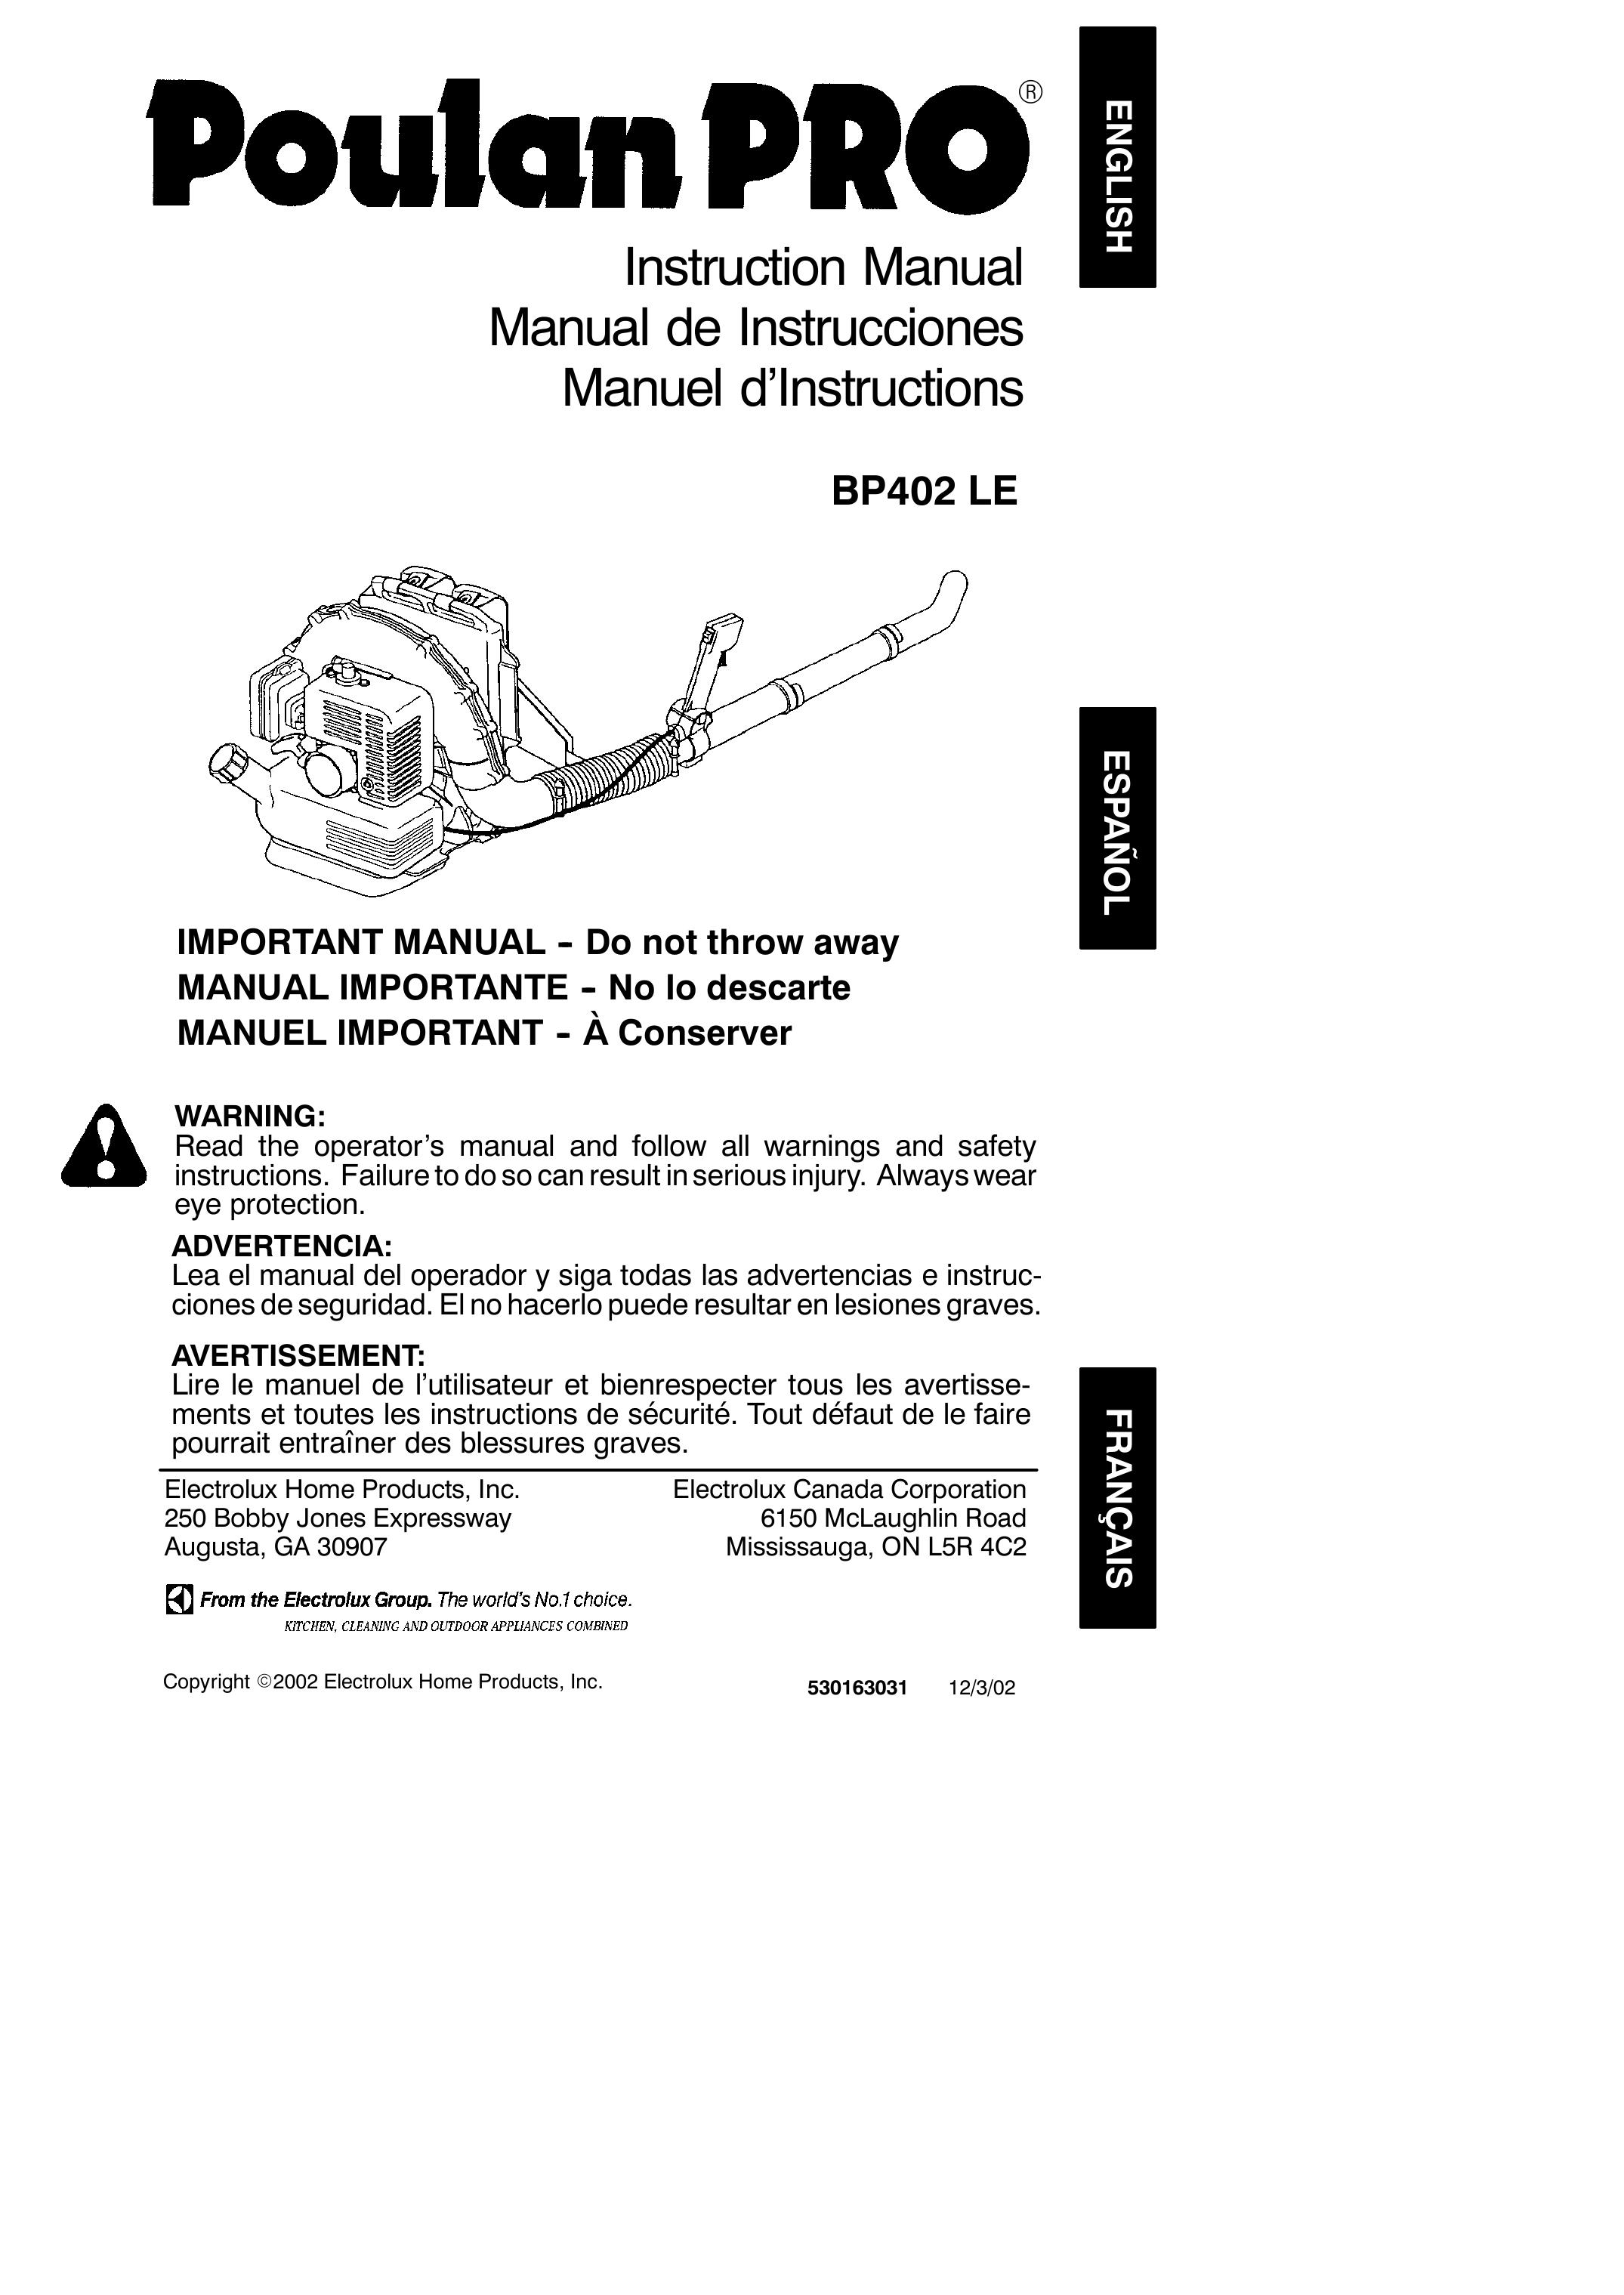 Poulan 530163031 Blower User Manual